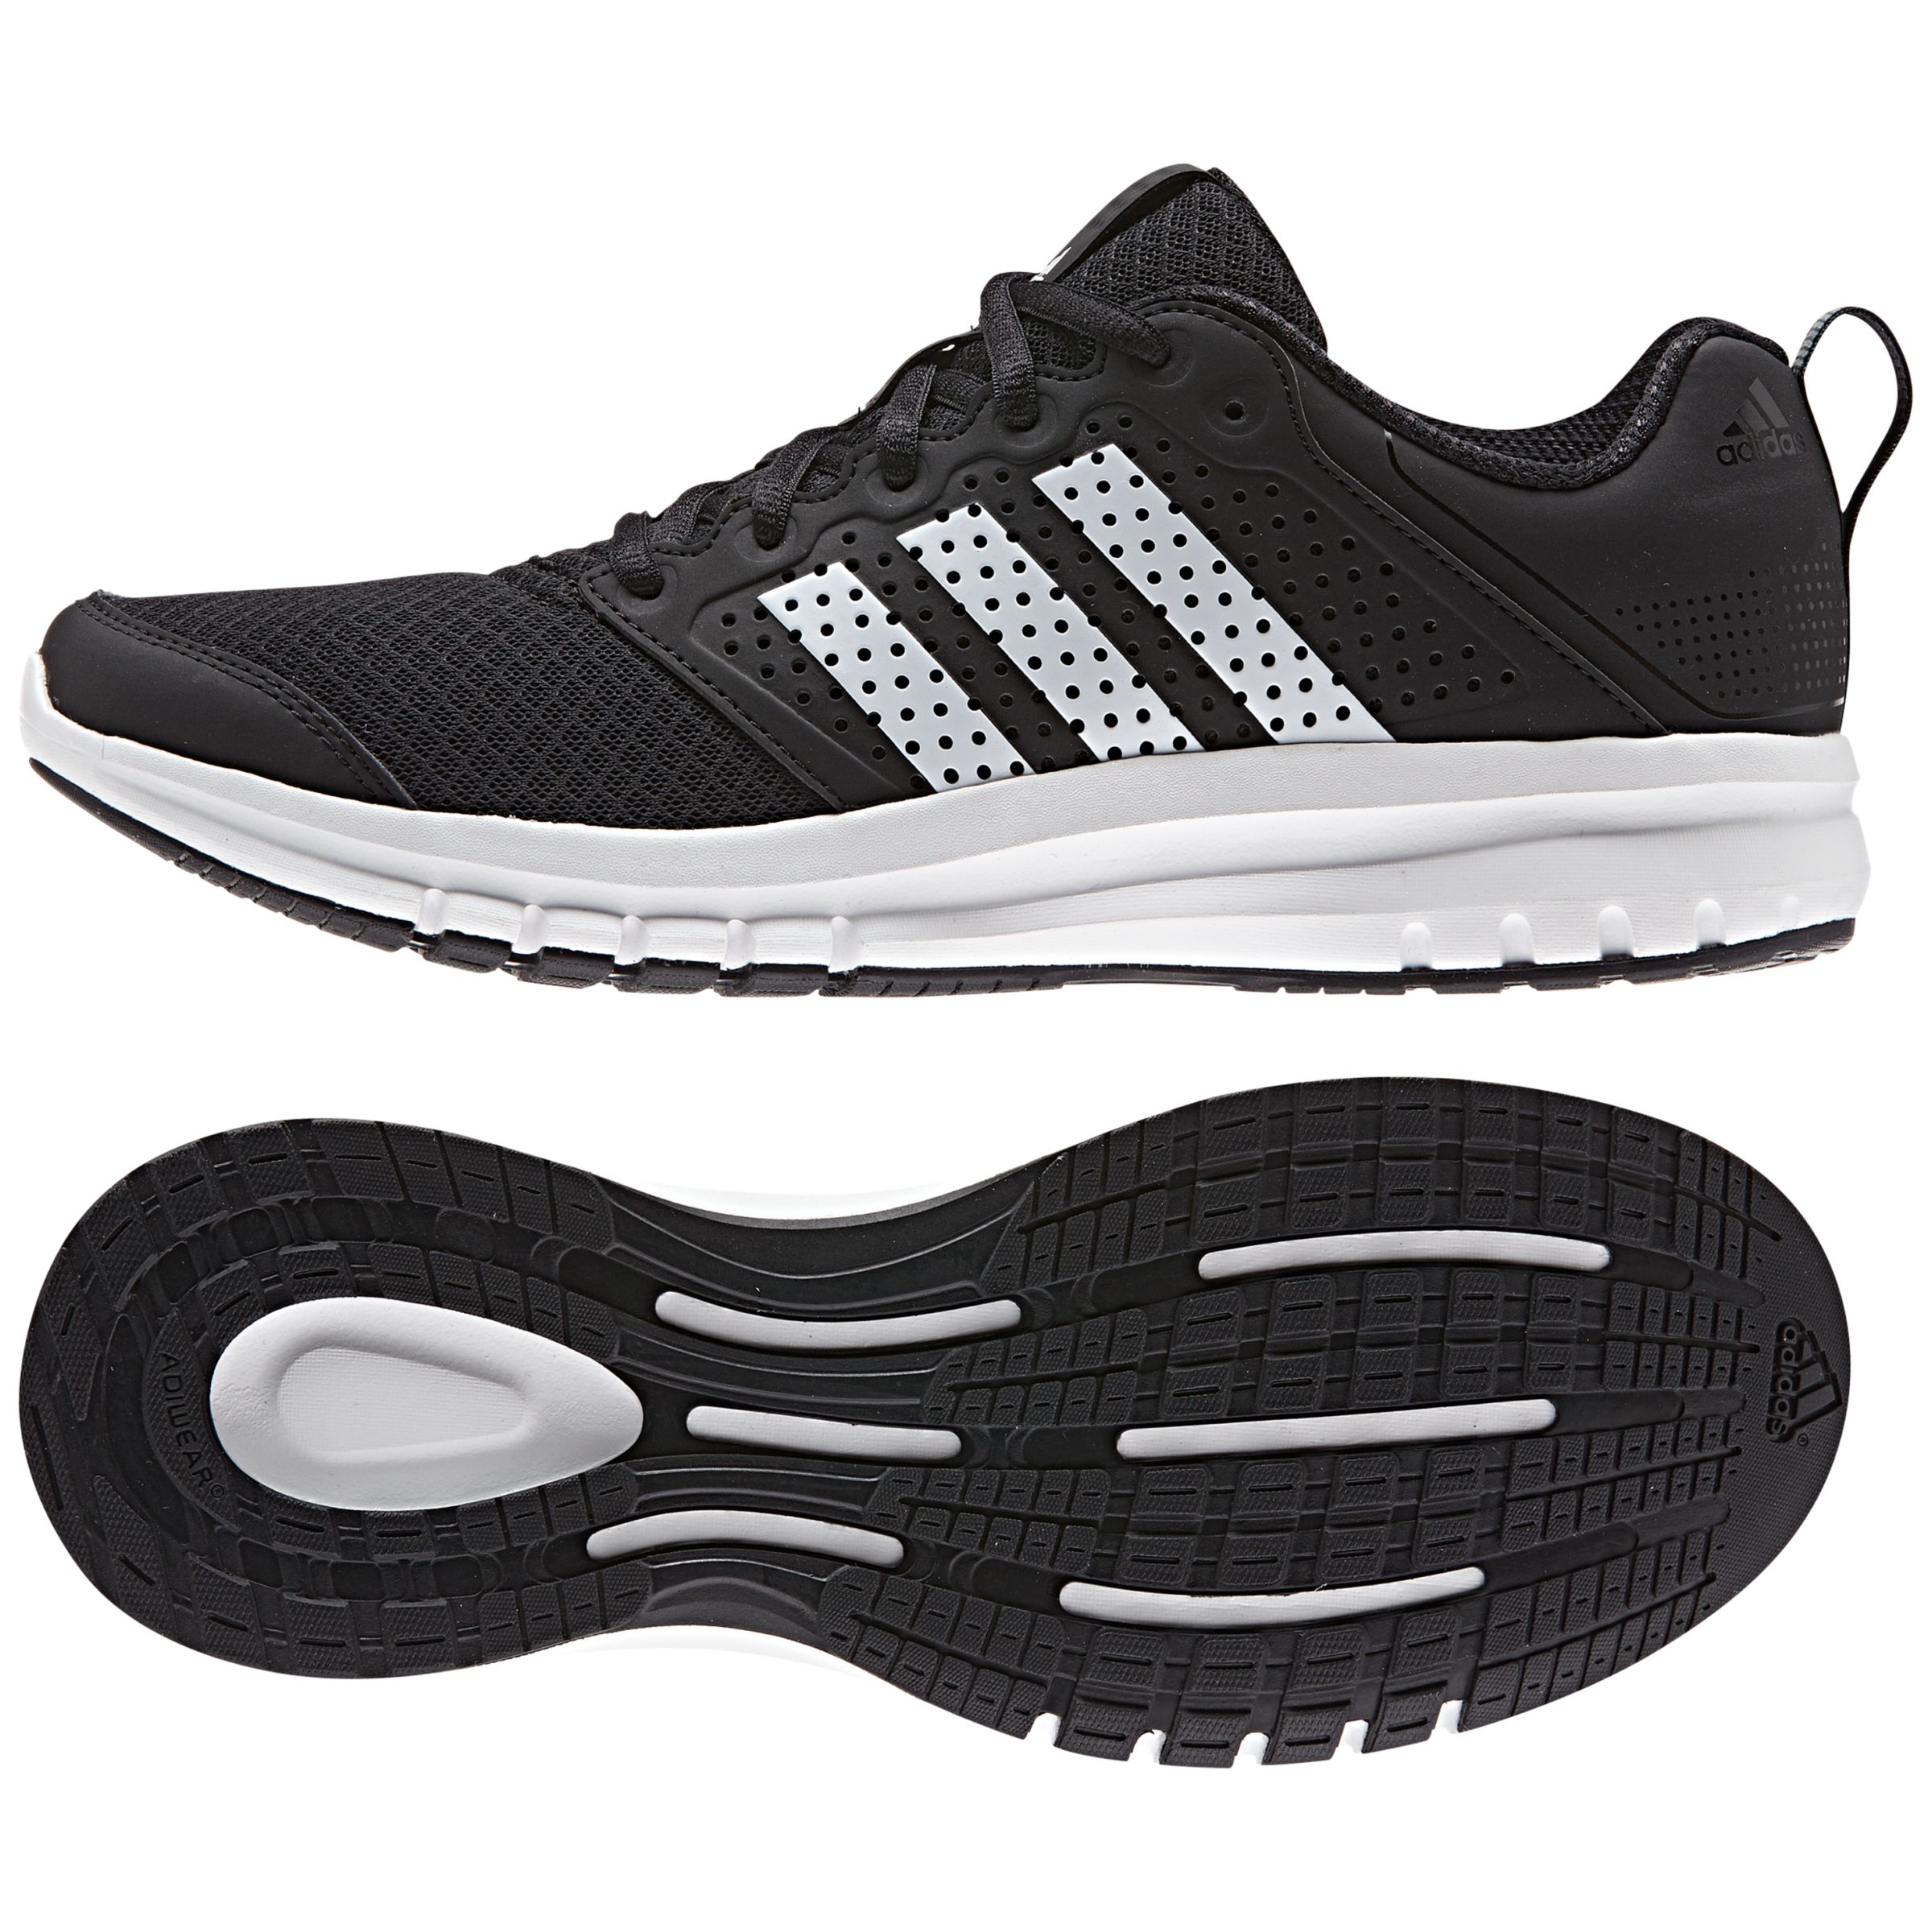 abrazo número Agotamiento Adidas Madoru 11 Men's Running Shoes, Black/White